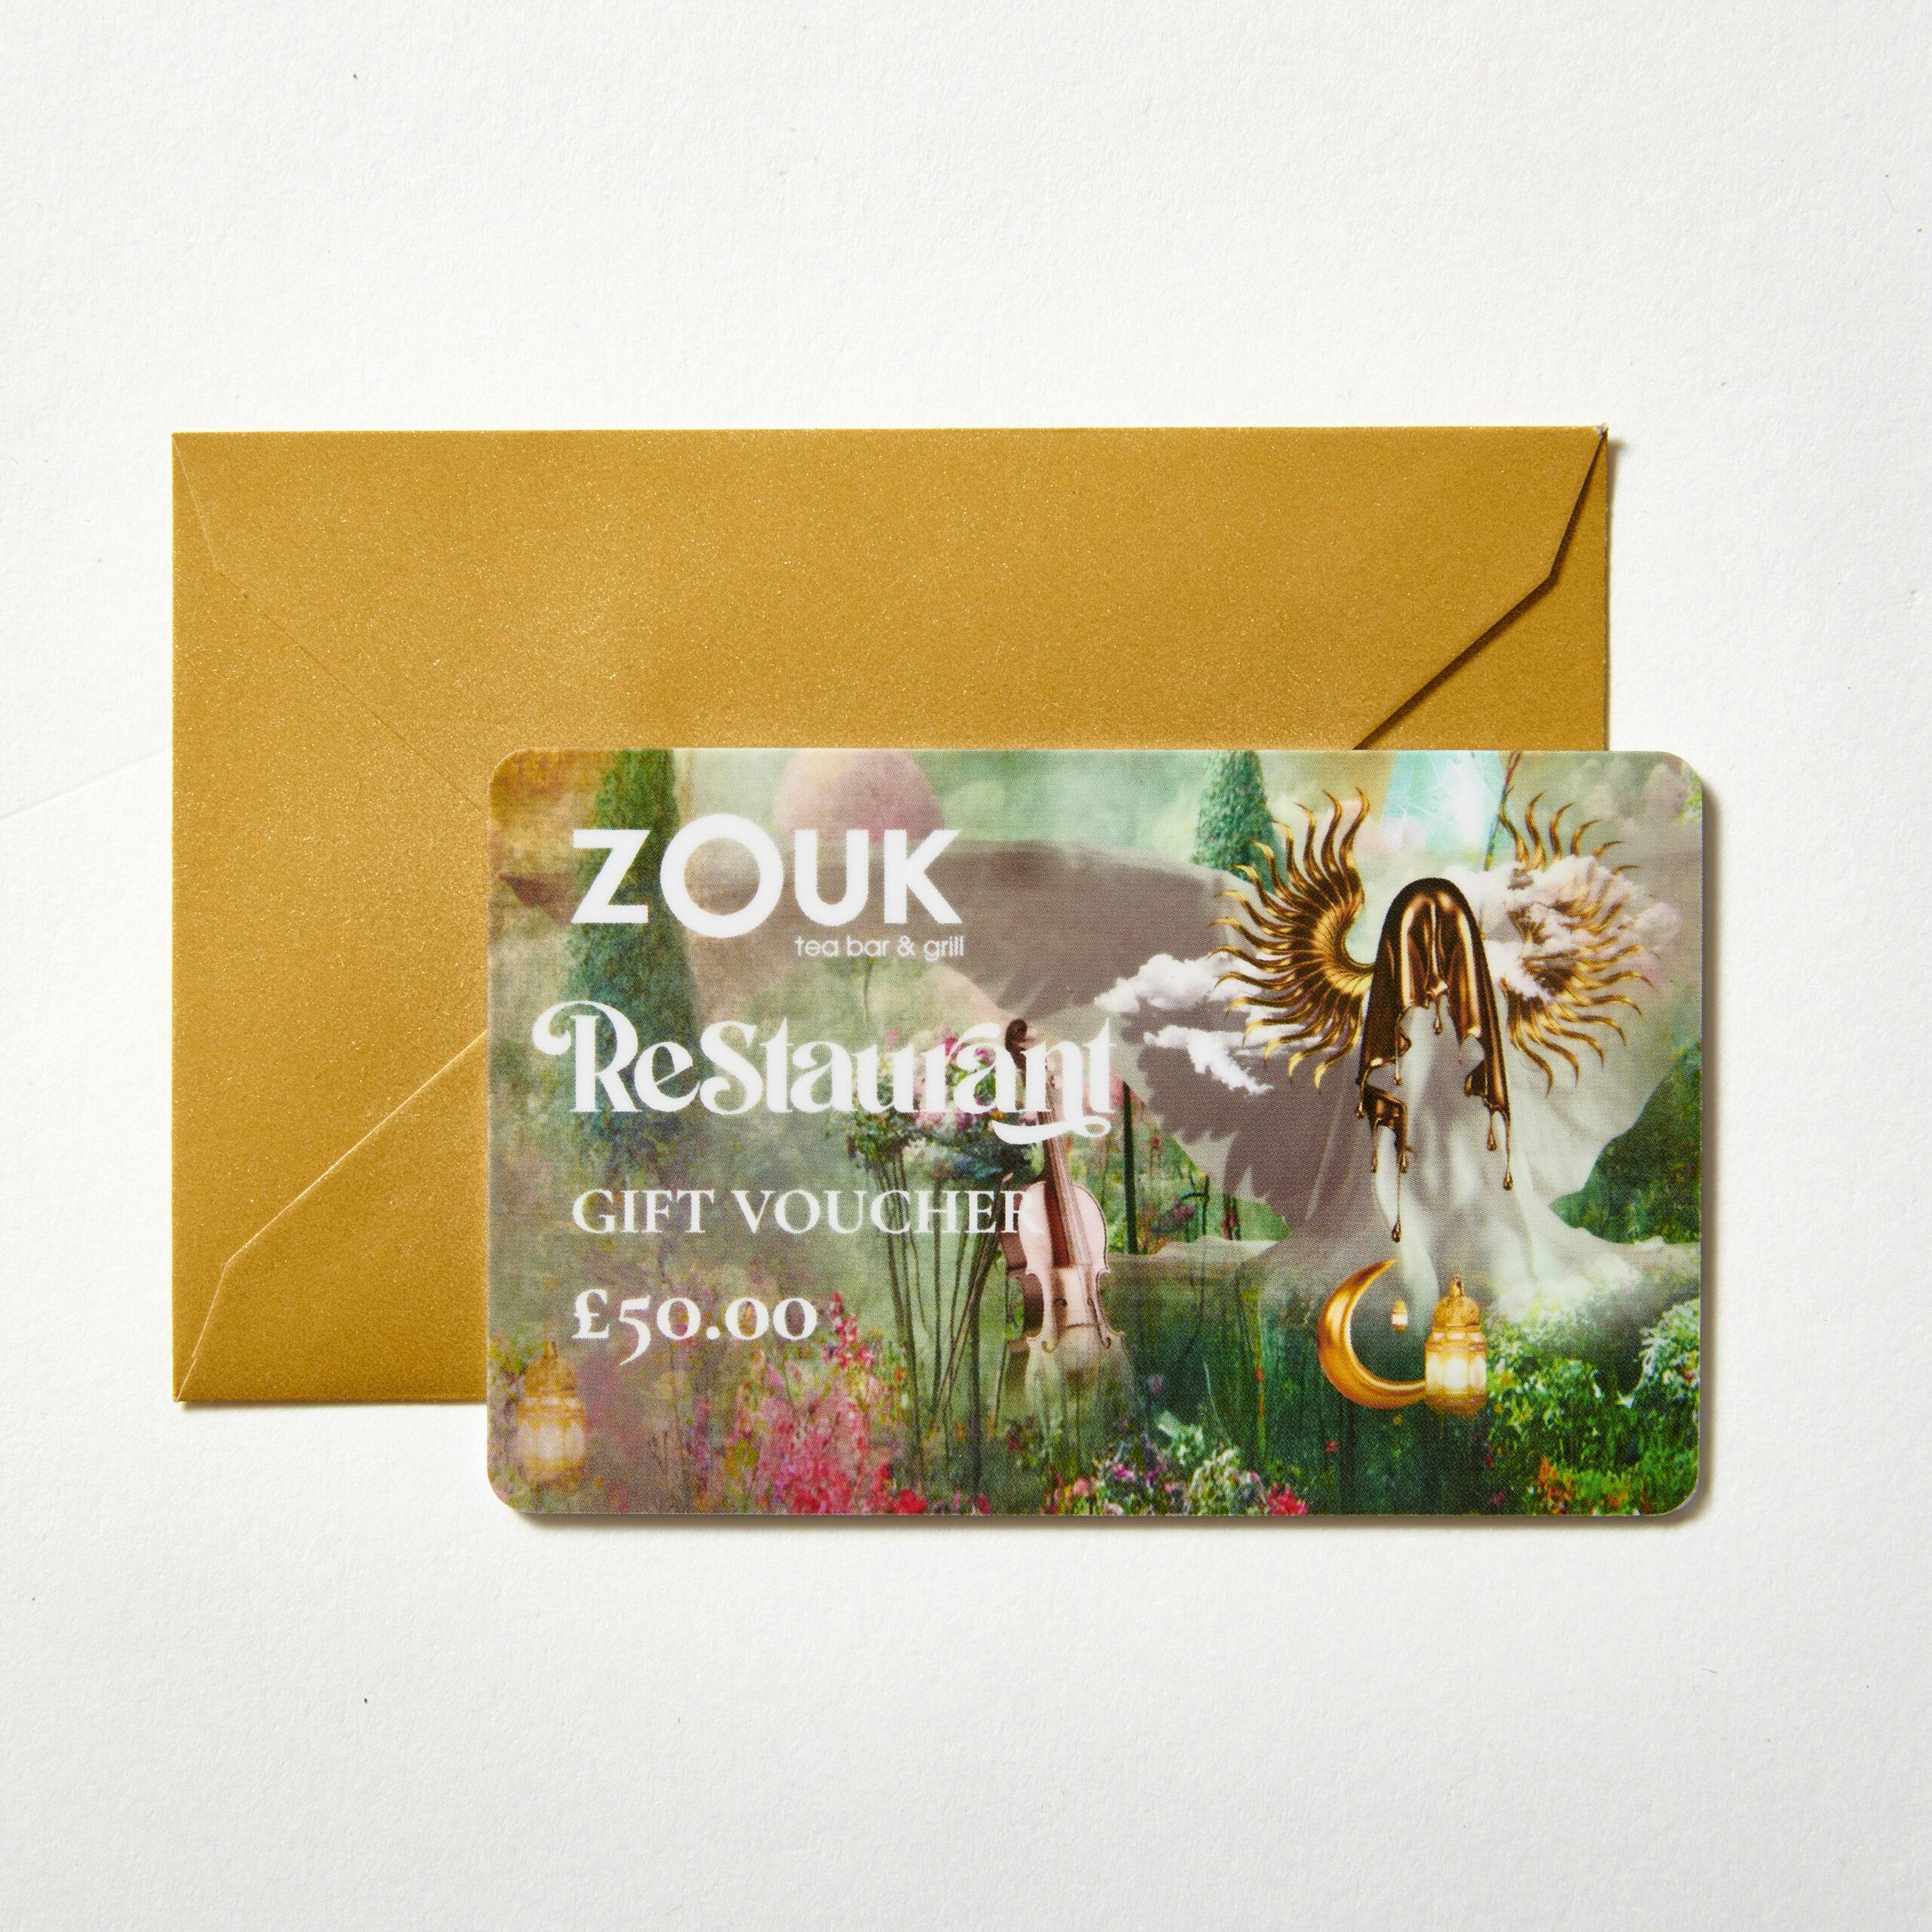 Zouk Restaurant Gift Card £50